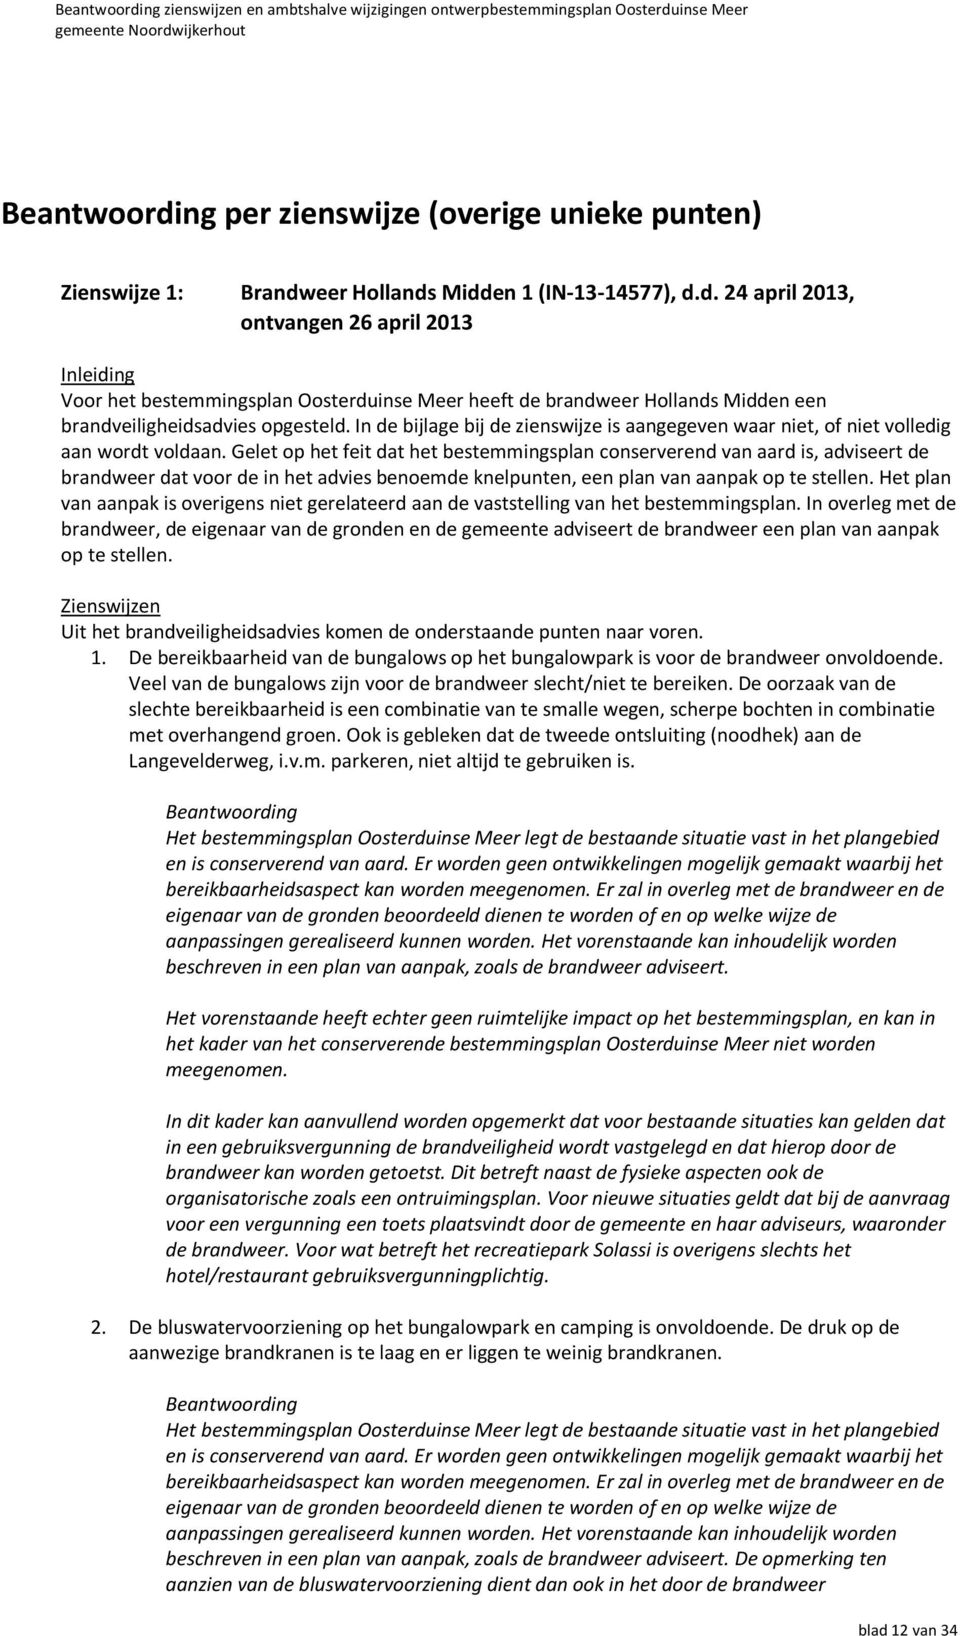 eer Hollands Midden 1 (IN-13-14577), d.d. 24 april 2013, ontvangen 26 april 2013 Inleiding Voor het bestemmingsplan Oosterduinse Meer heeft de brandweer Hollands Midden een brandveiligheidsadvies opgesteld.